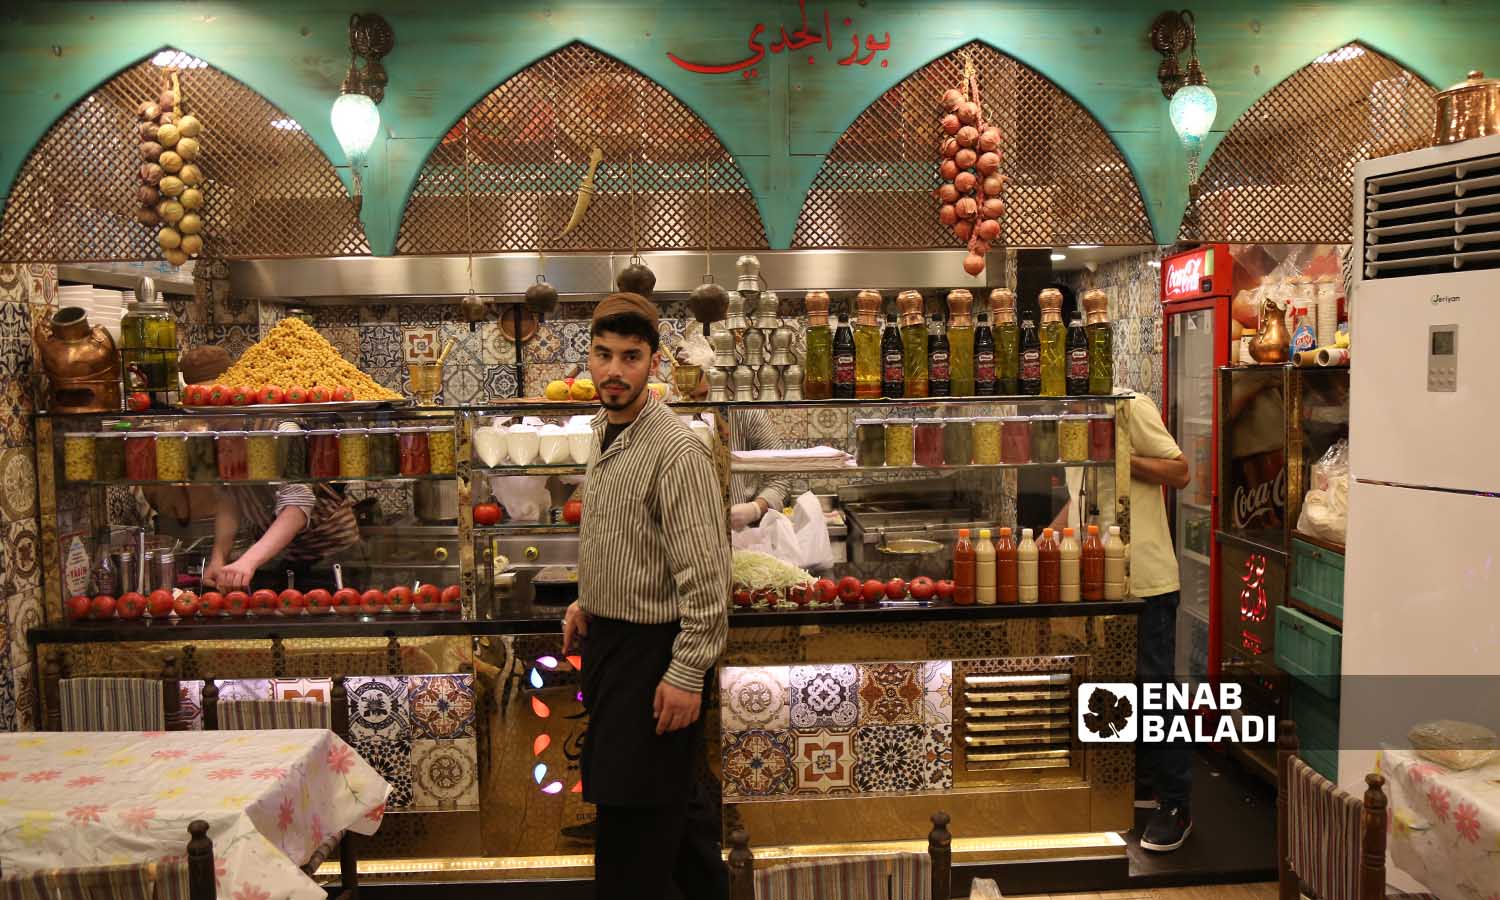 مطعم مأكولات شعبية سوري في منطقة الفاتح 27 من أيار 2022 (عنب بلدي/يوسف حمص)